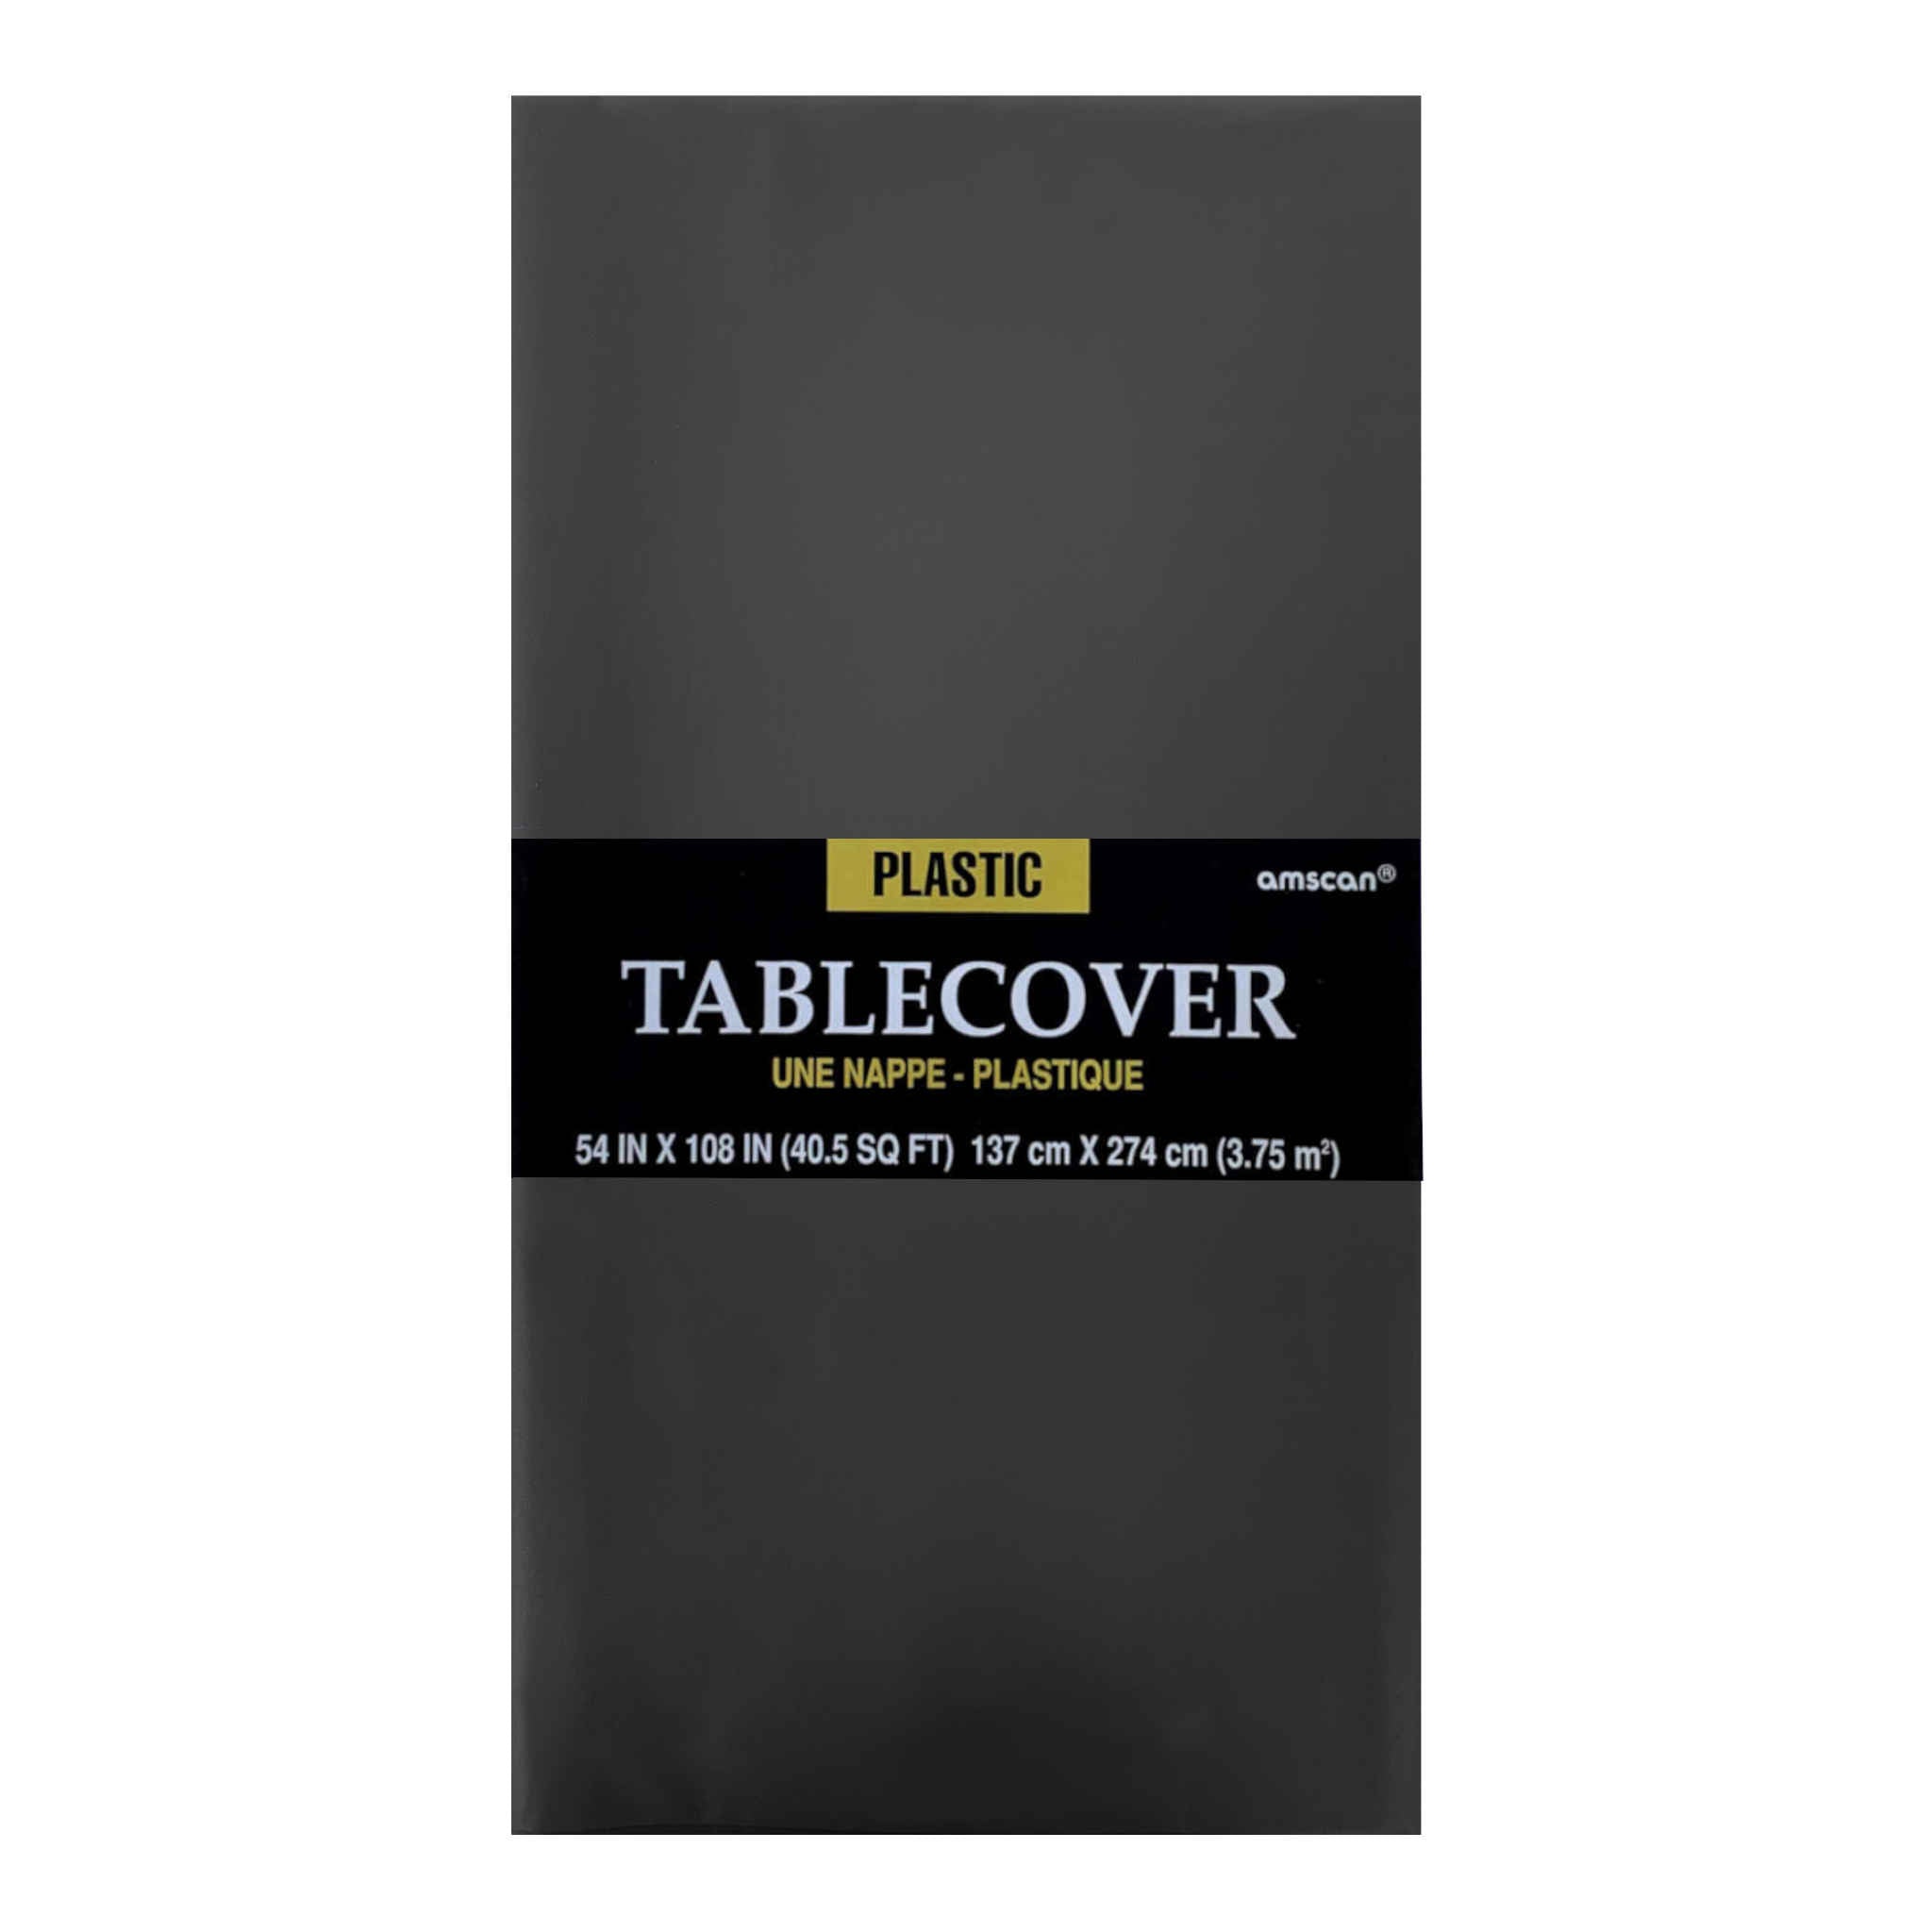 Rectangular Plastic Table Cover | Black | 137 x 274cm